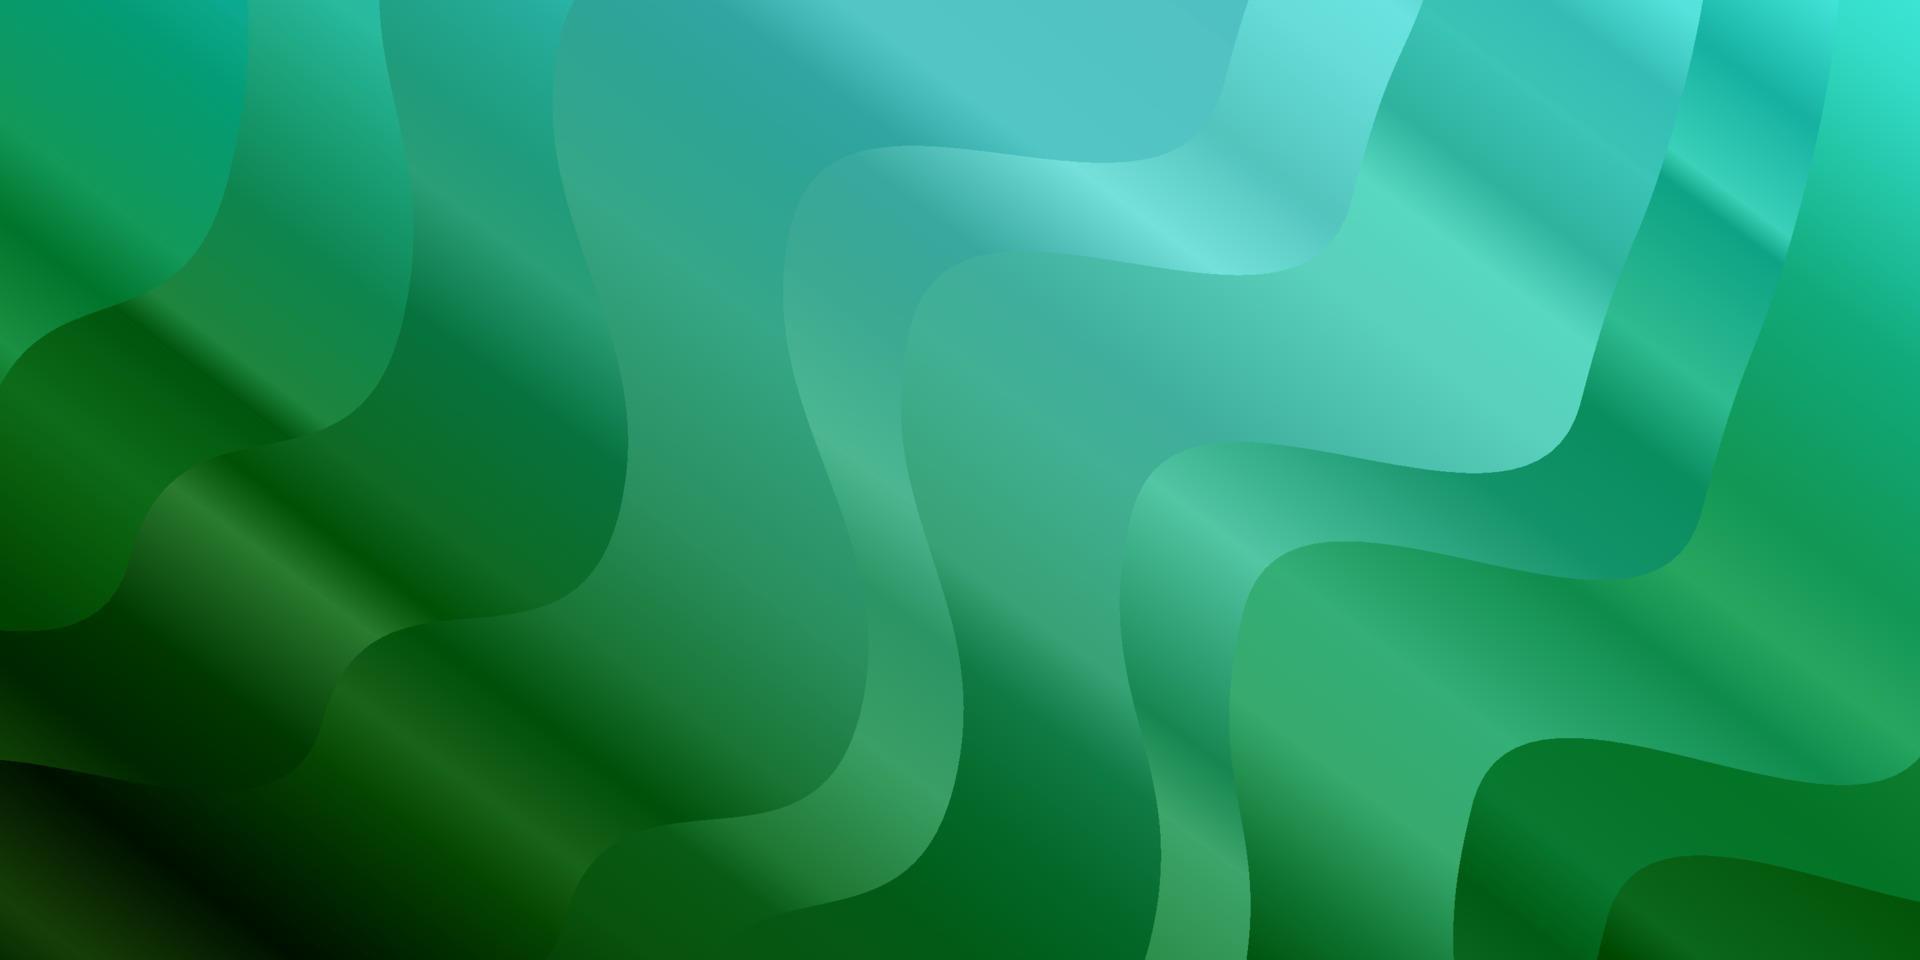 hellblaue, grüne Vektorschablone mit gekrümmten Linien. vektor